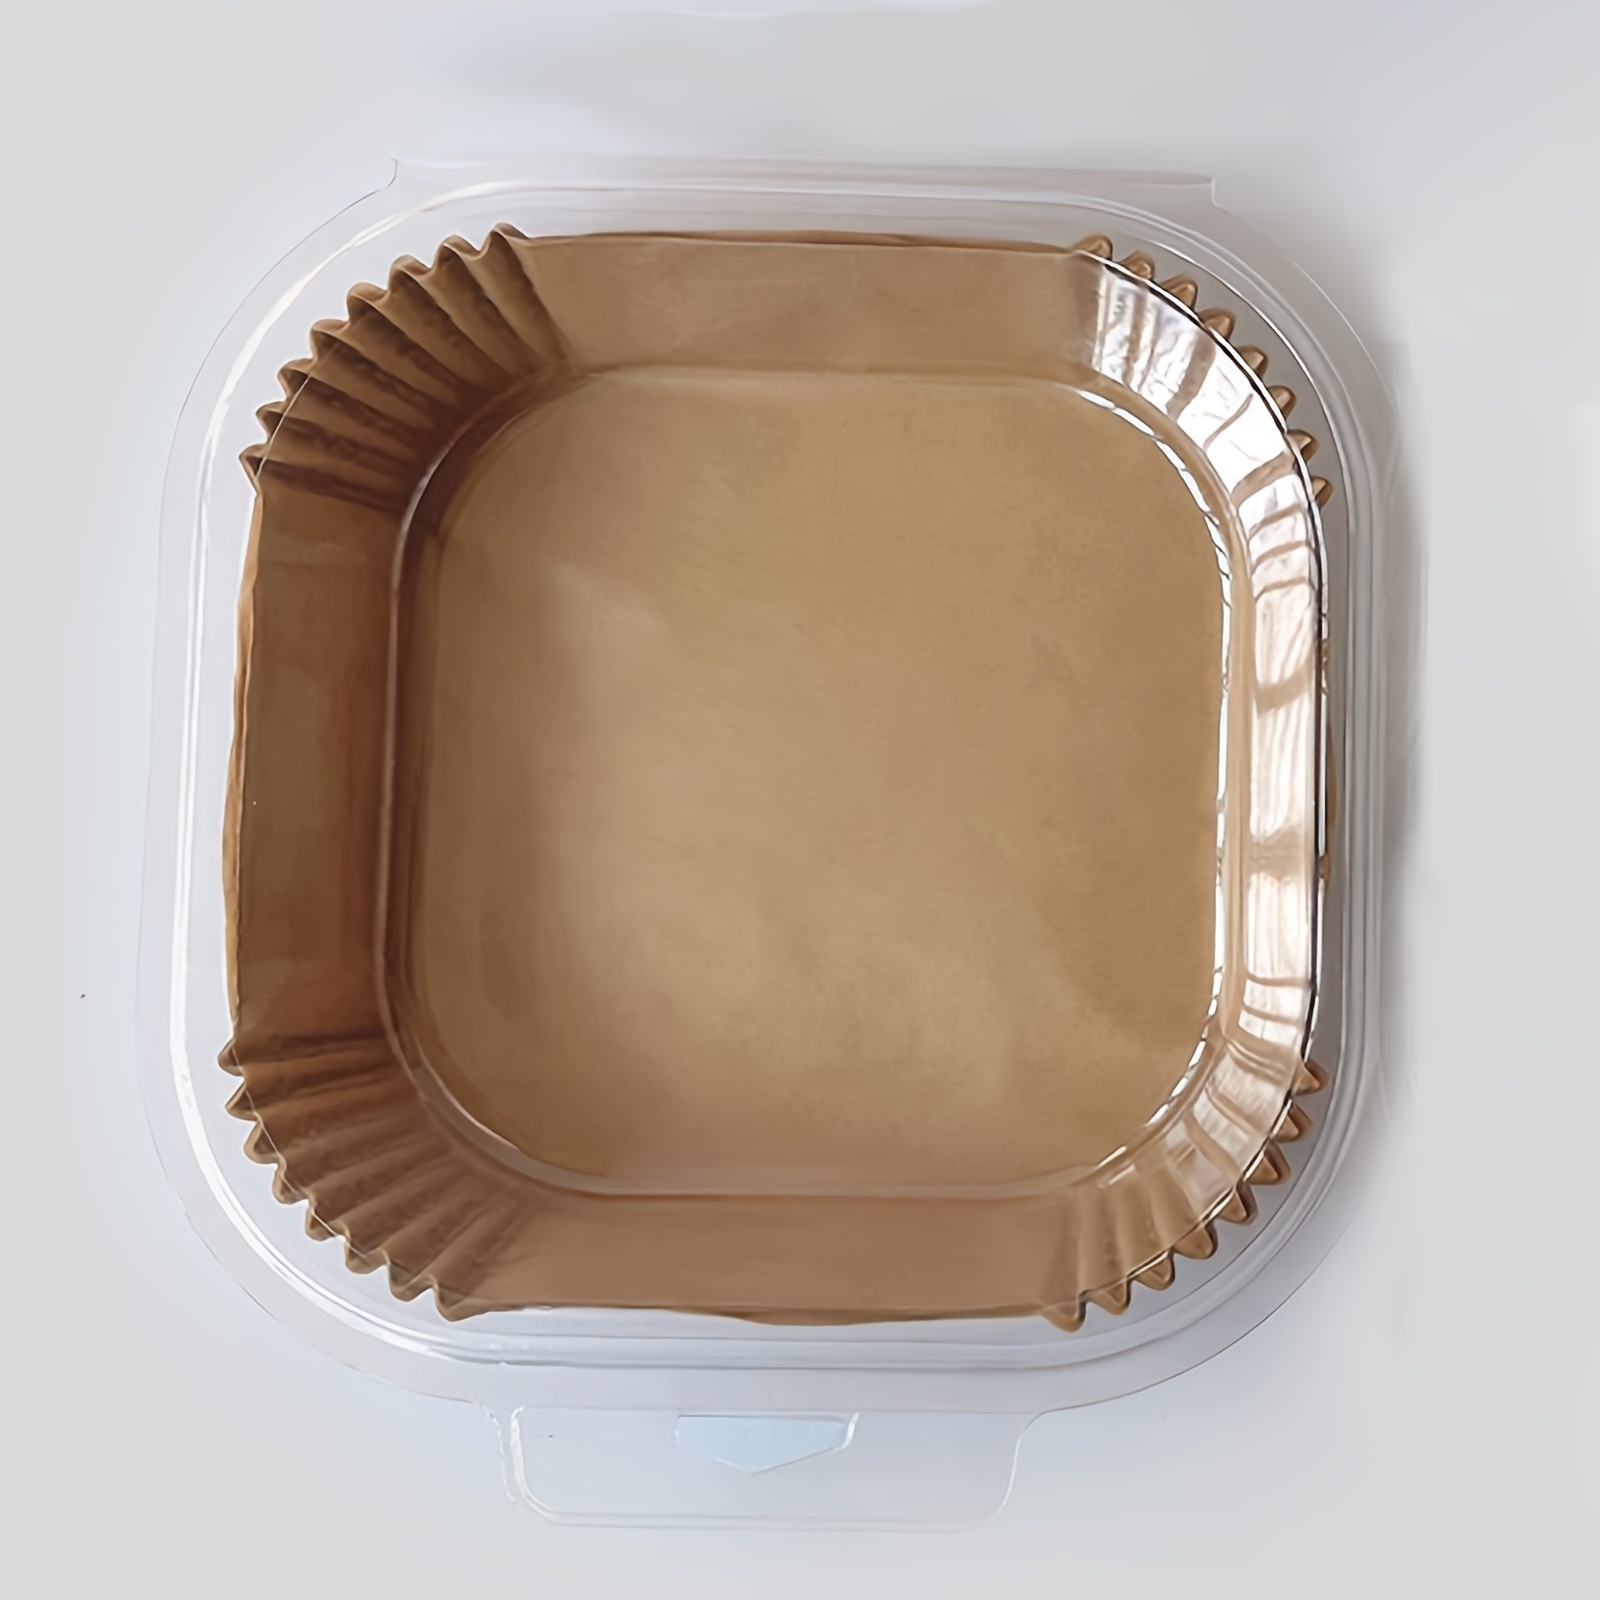 50pcs Square Air Fryer Disposable Paper Liner Non-Stick Baking